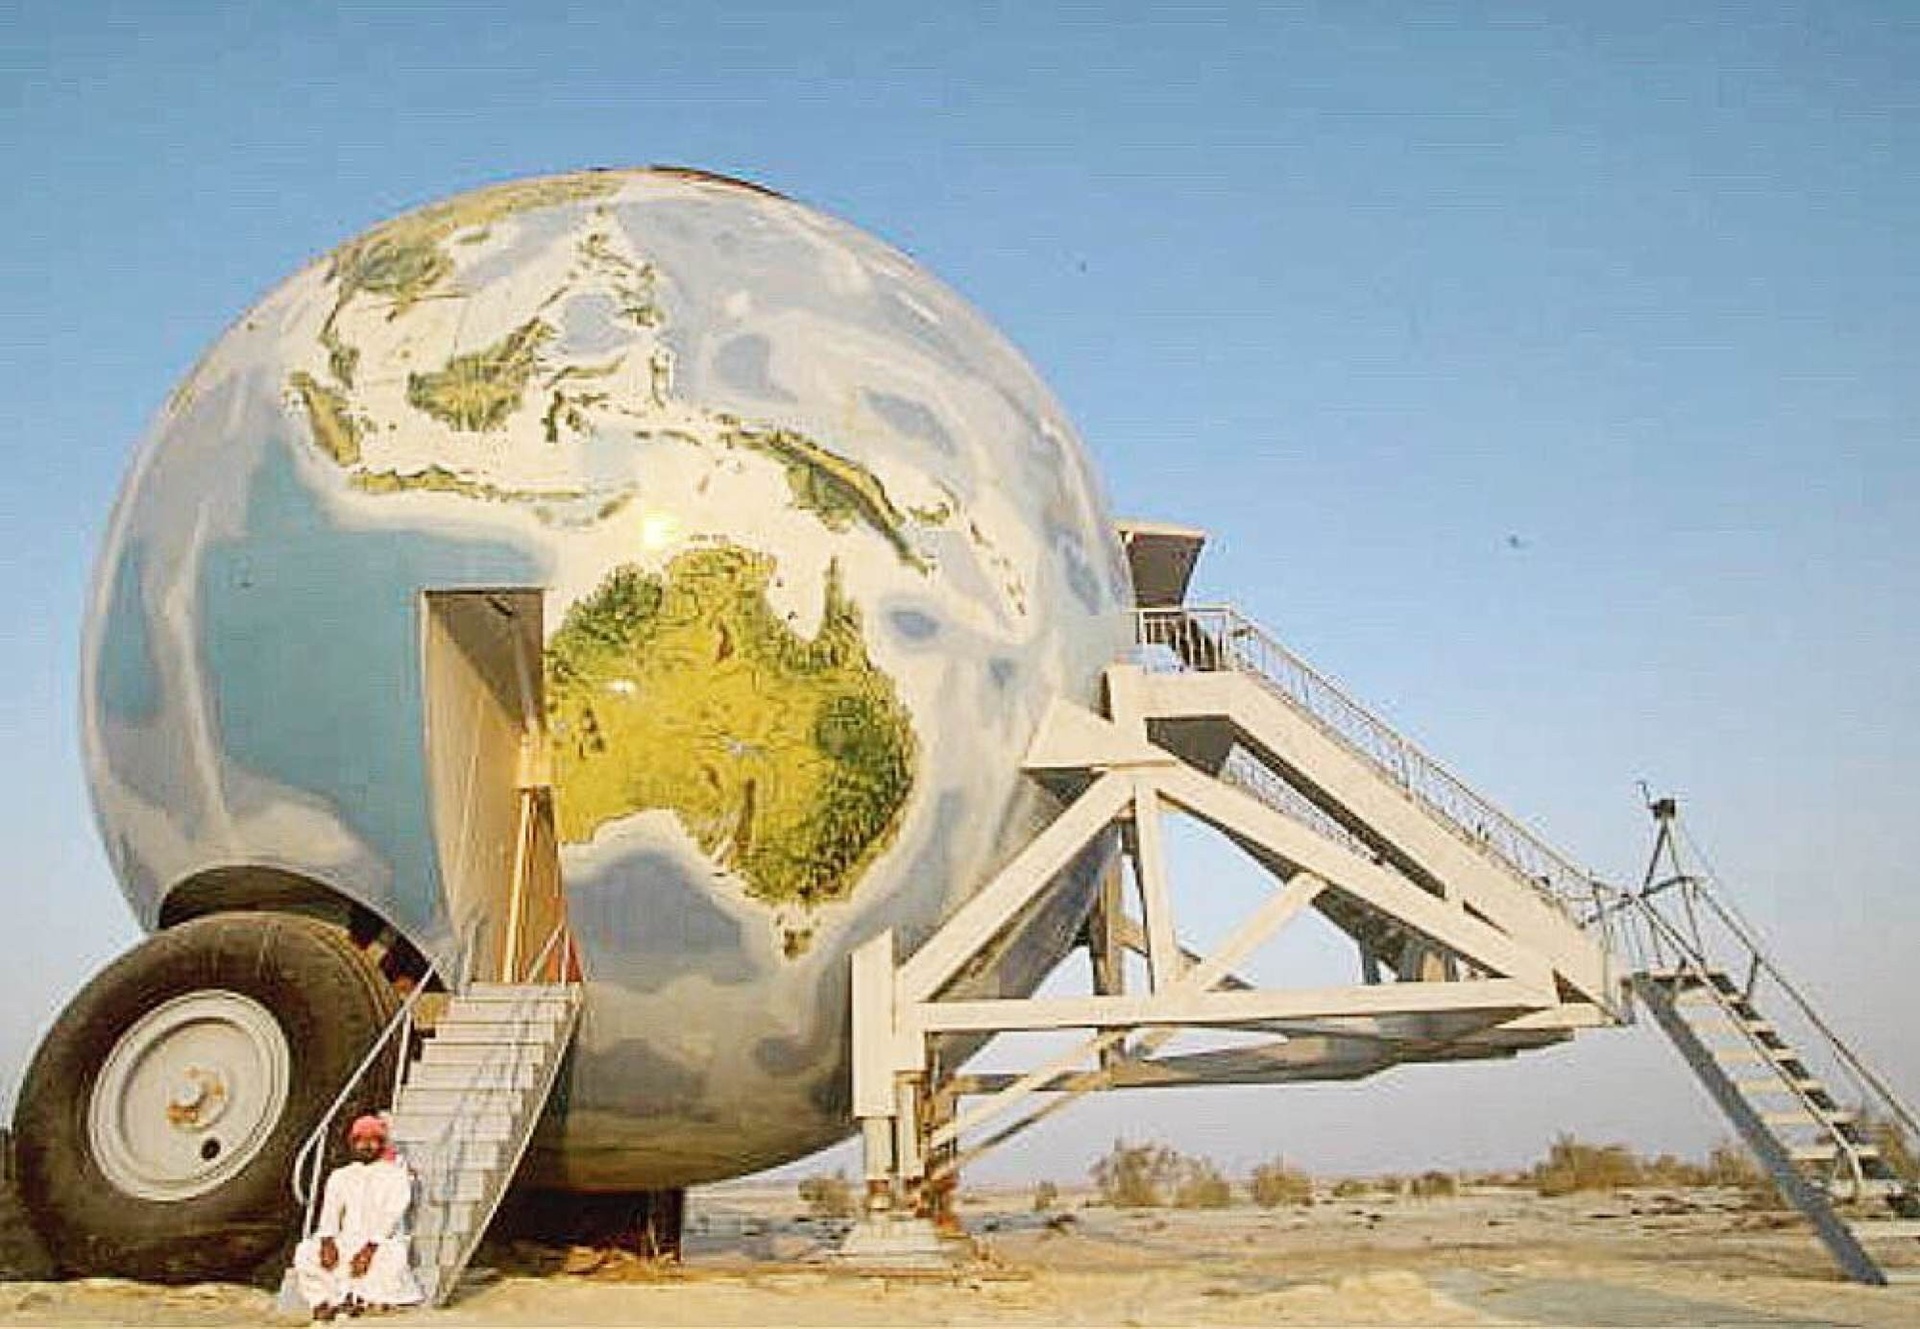 mô hình xe hình quả địa cầu thuộc quyền sở hữu của vị tỷ phú UAE.